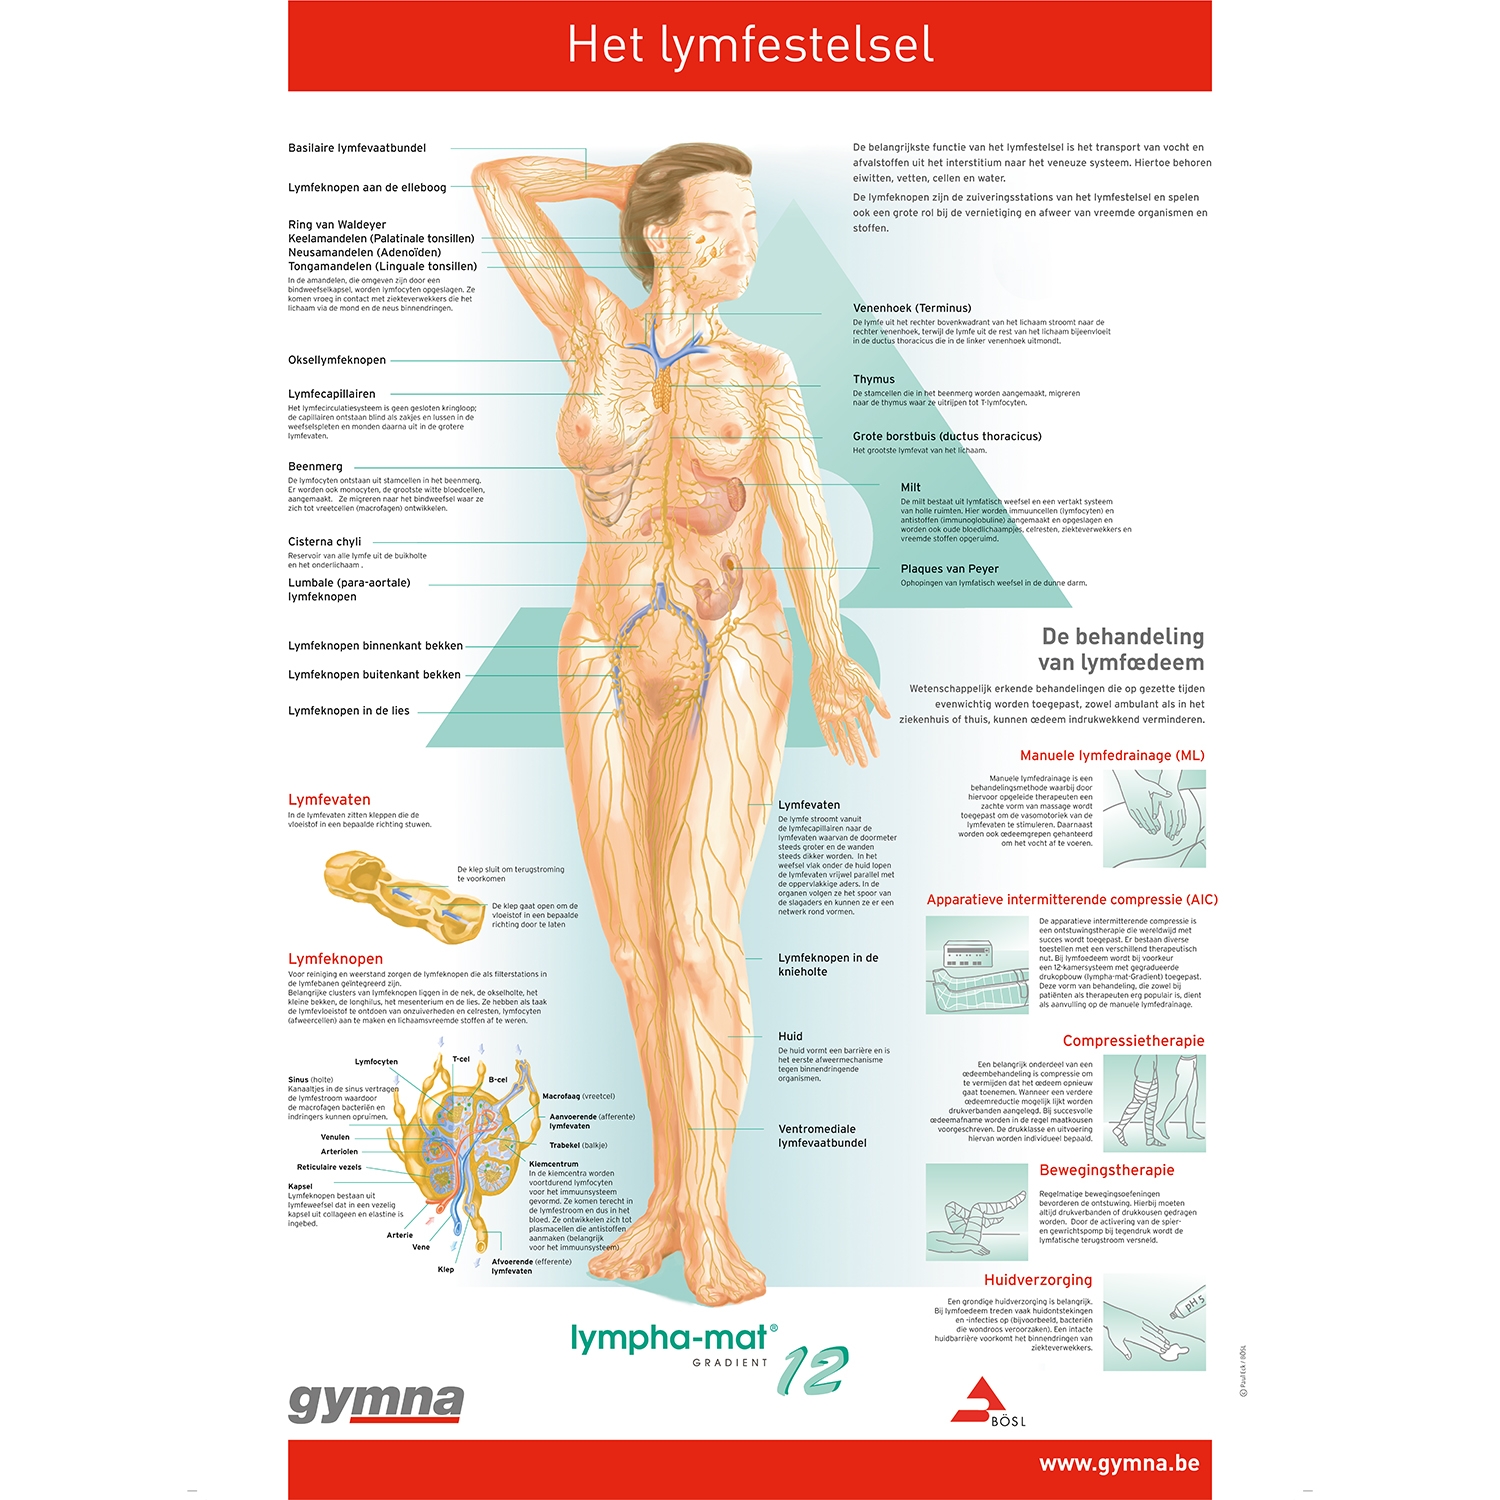 Planche anatomique - Le squelette humain - Anatomie et pathologie - 3B  Scientific | My Médical